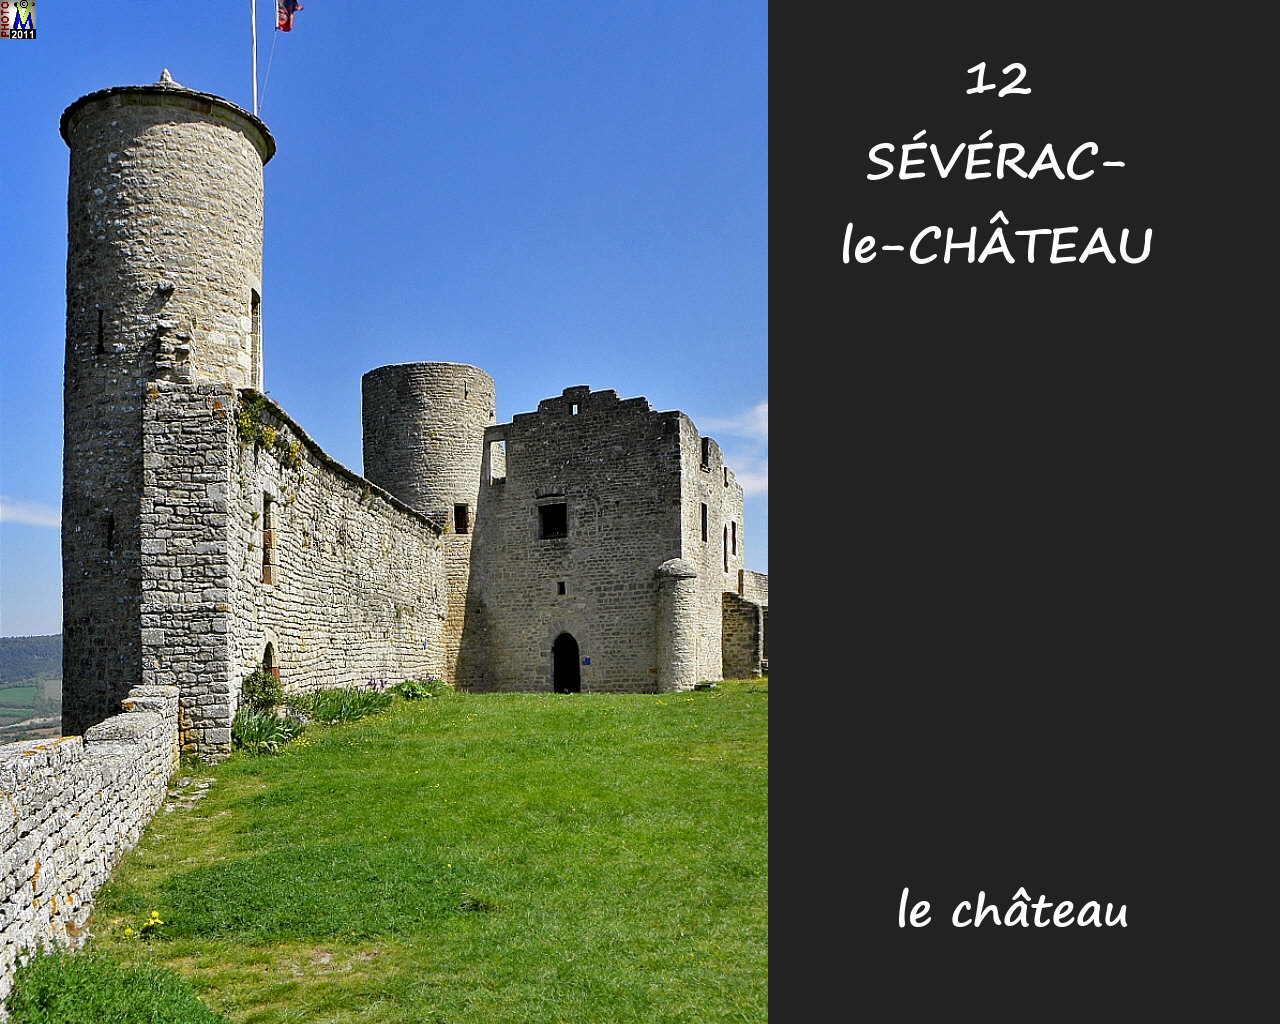 12SEVERAC-CHATEAU_chateau_146.jpg